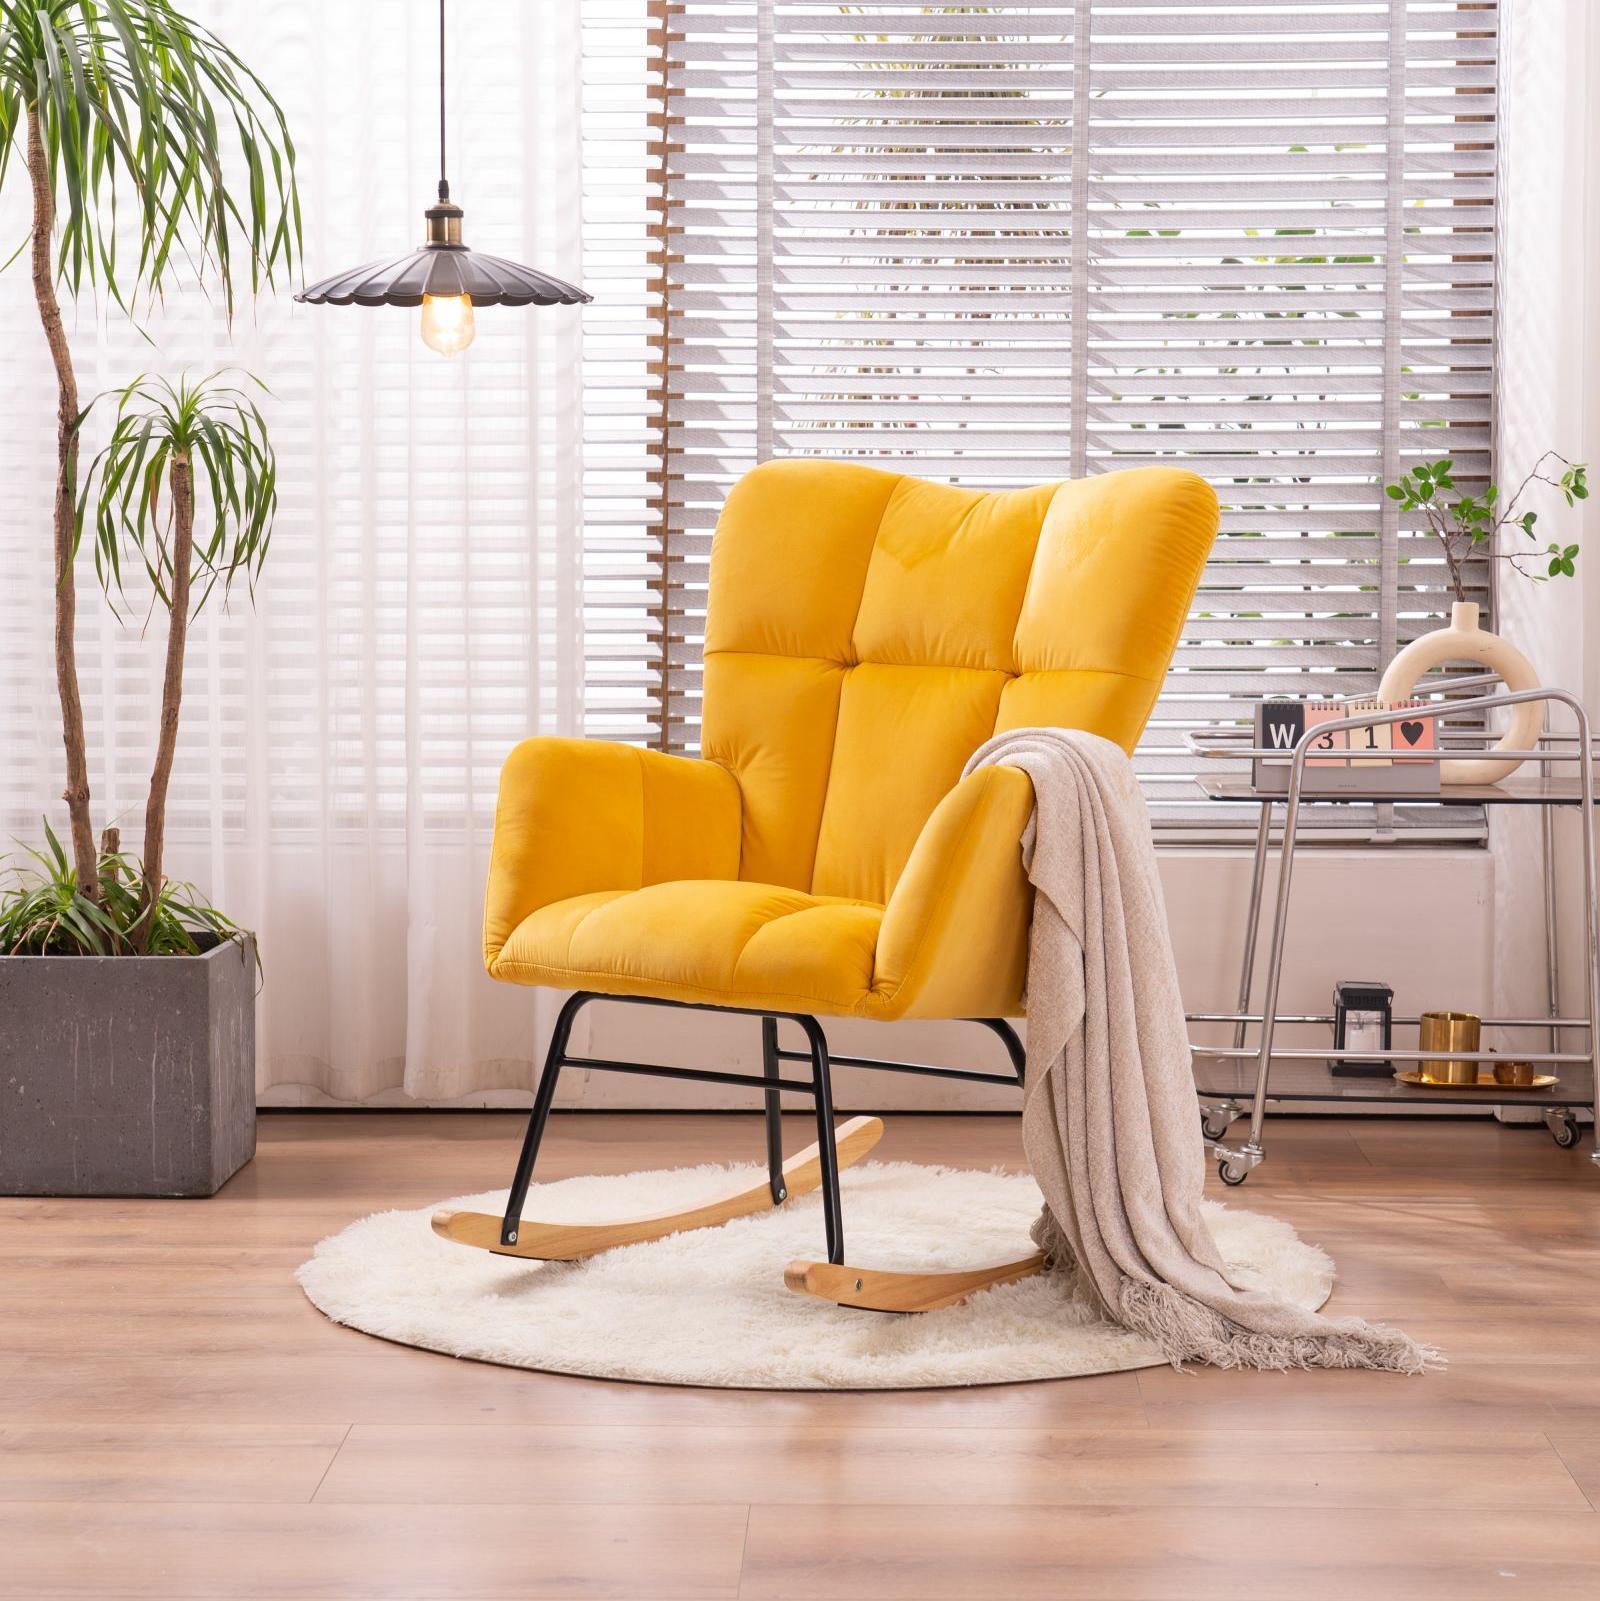 Mid Century Modern Velvet Tufted Upholstered Rocking Chair Padded Seat for Living Room Bedroom, Yellow-Boyel Living